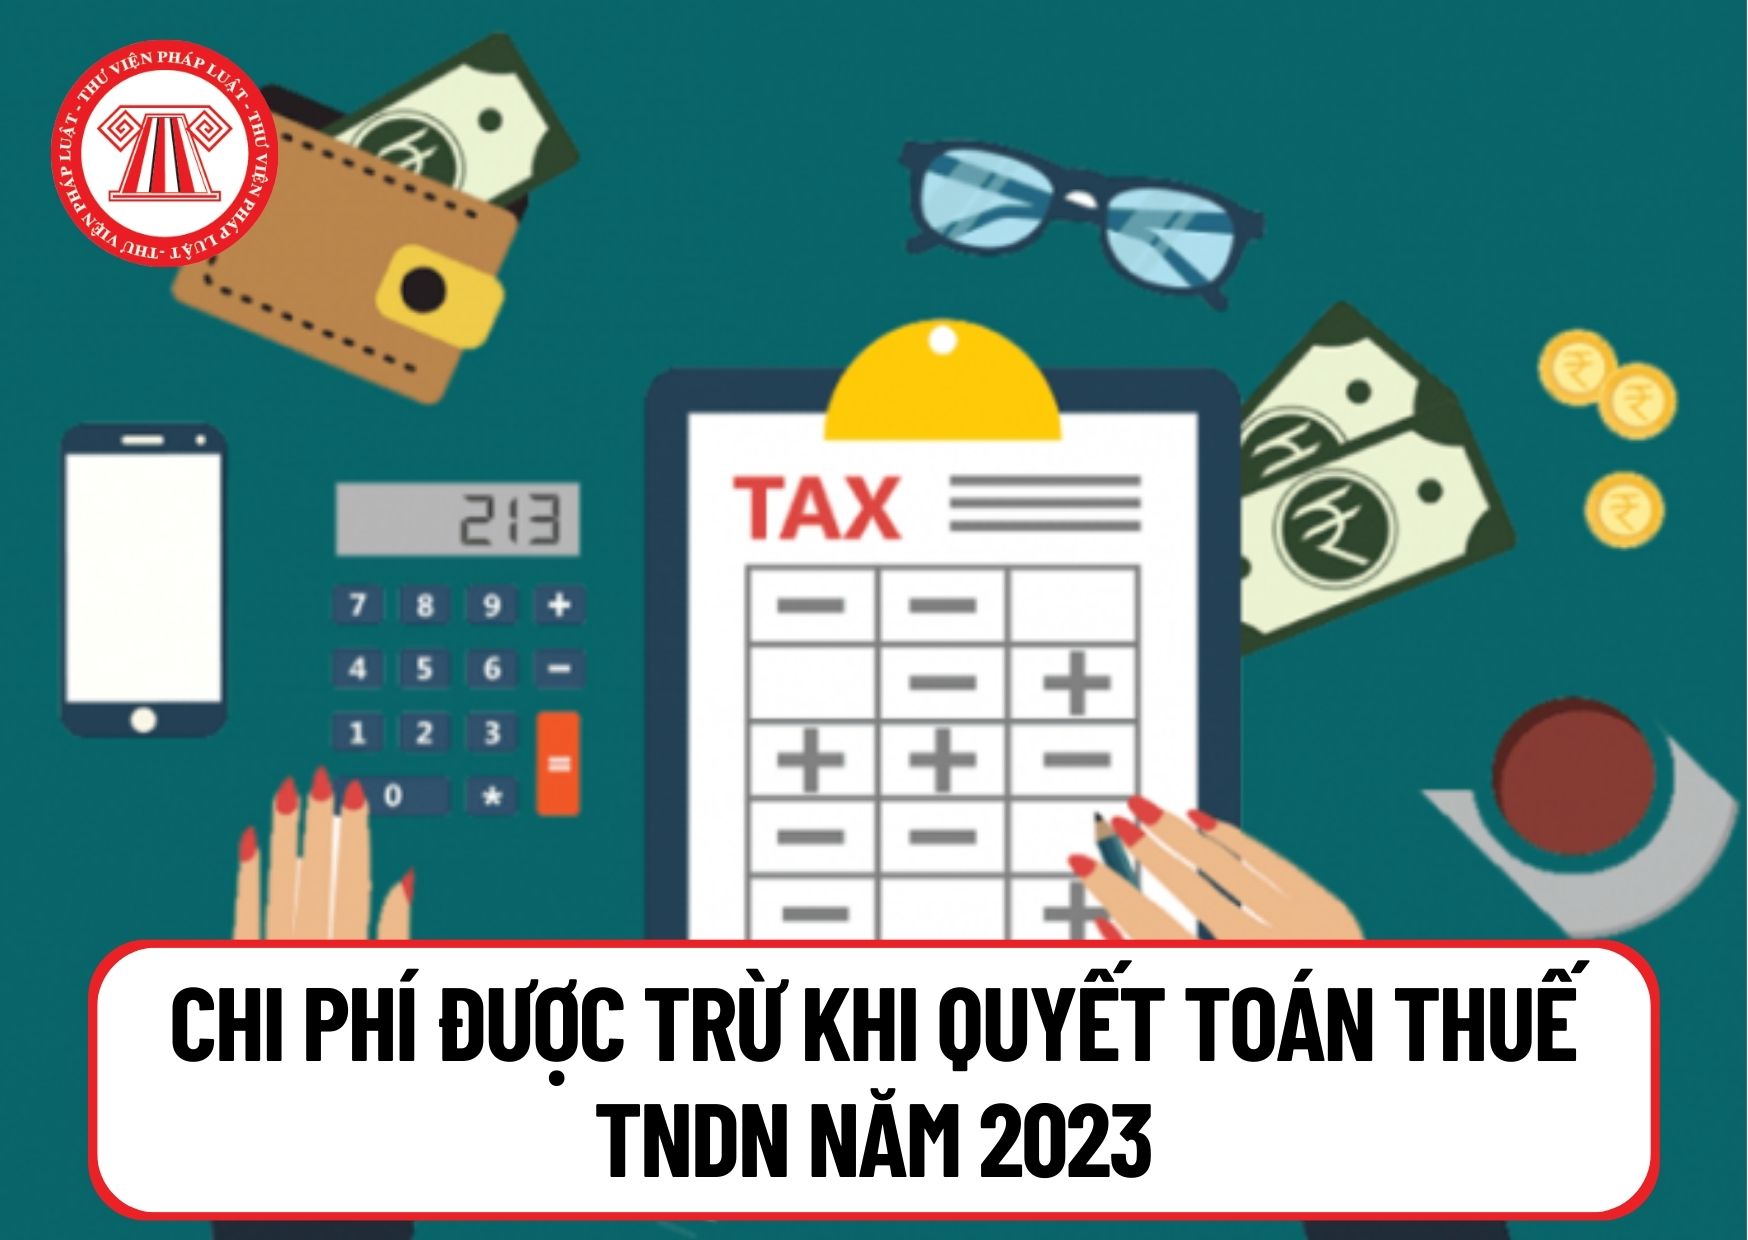 Tiền mua bảo hiểm nhân thọ cho người lao động có được tính vào chi phí được trừ khi quyết toán thuế TNDN năm 2023 không?